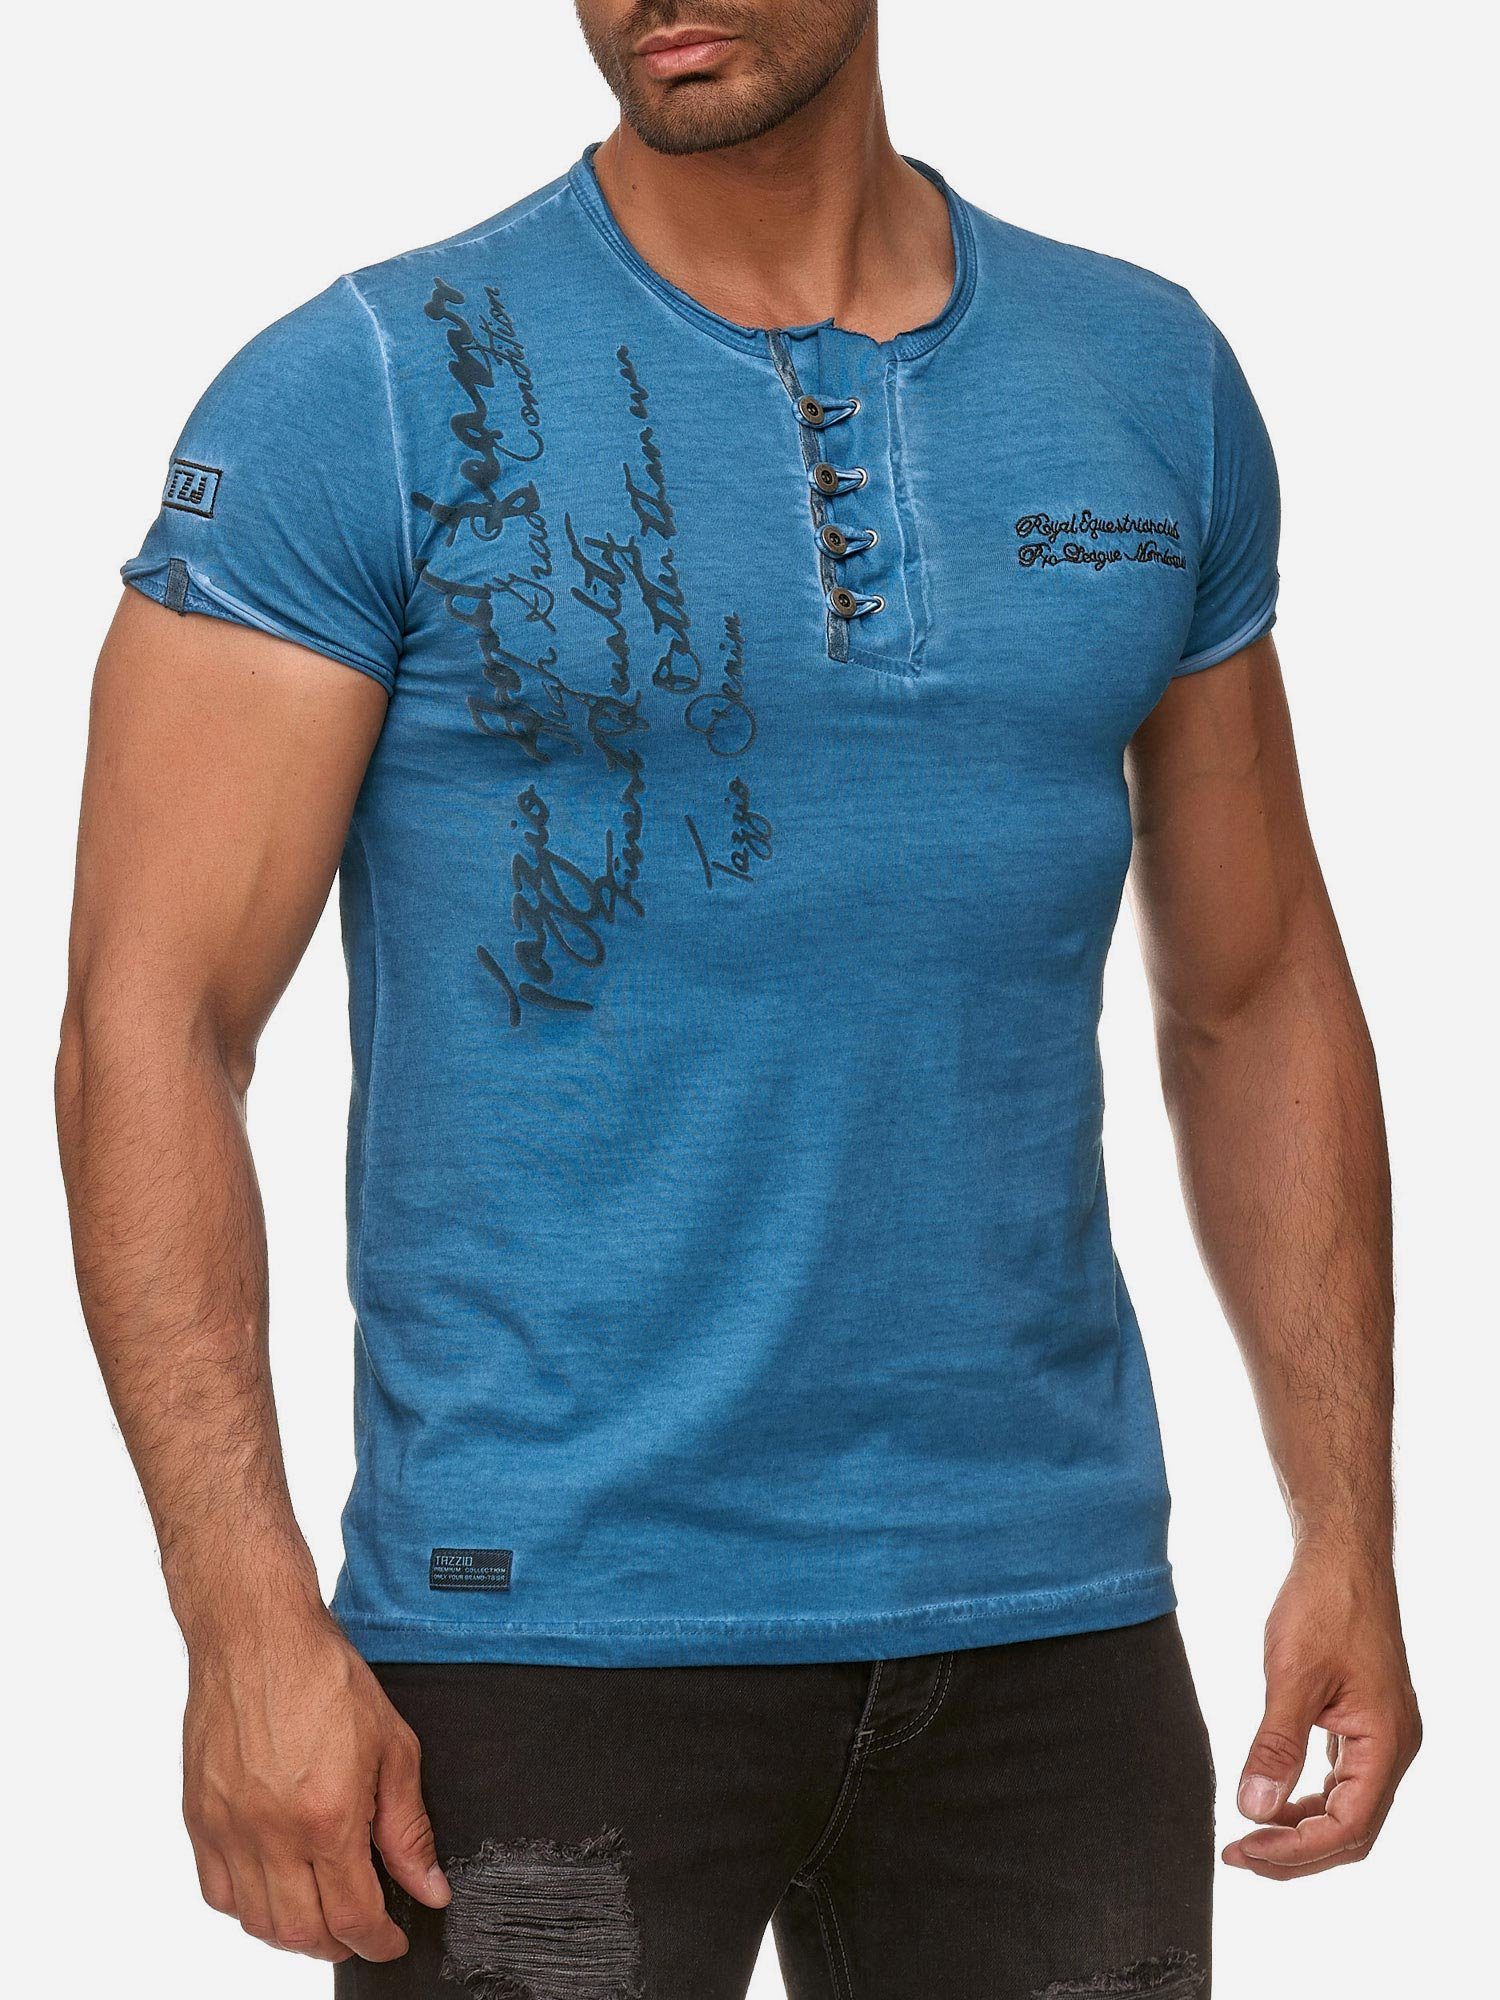 T-Shirt mit offenem und Tazzio 4050-1 in Ölwaschung Look petrol Rundhalsshirt Kragen Used dezentem